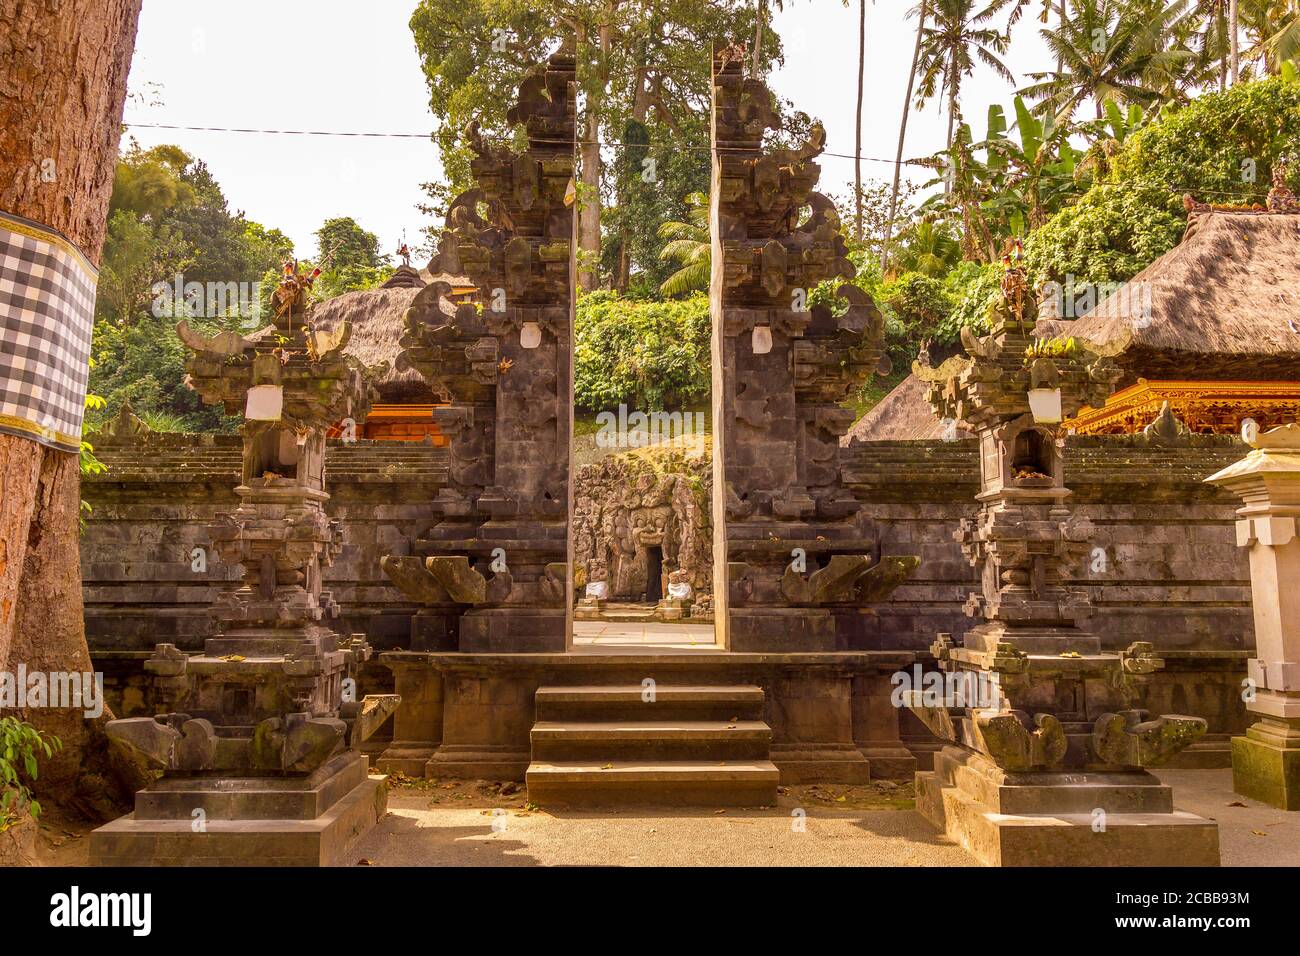 Goa Gajah temple in Bali, Indonesia Stock Photo